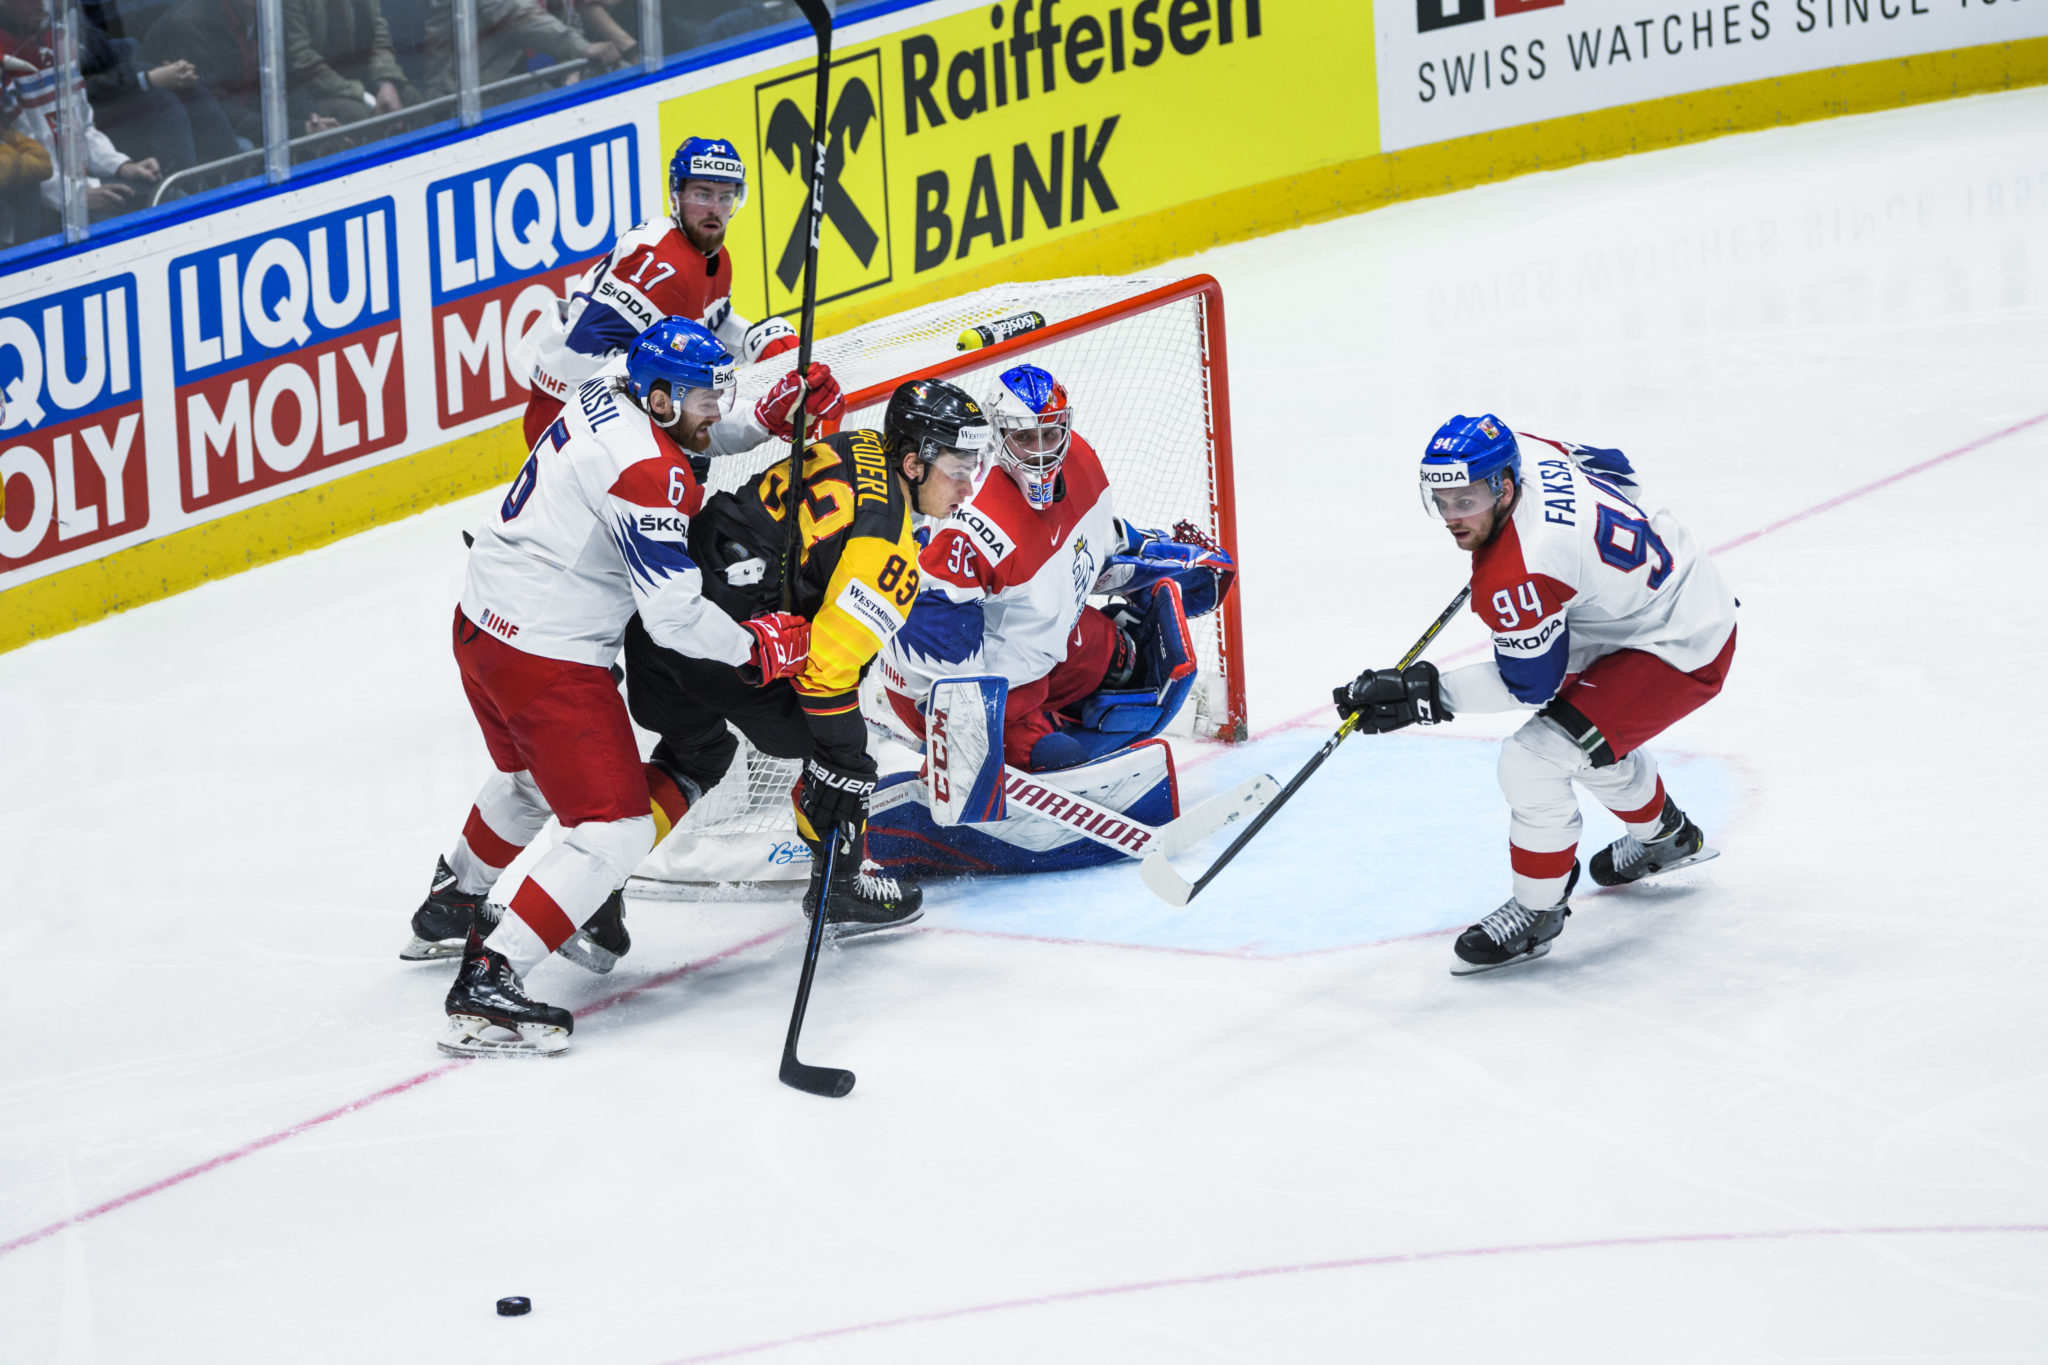 Liqui Moly sponsors 2020 IIHF Ice Hockey World Championship in Switzerland 